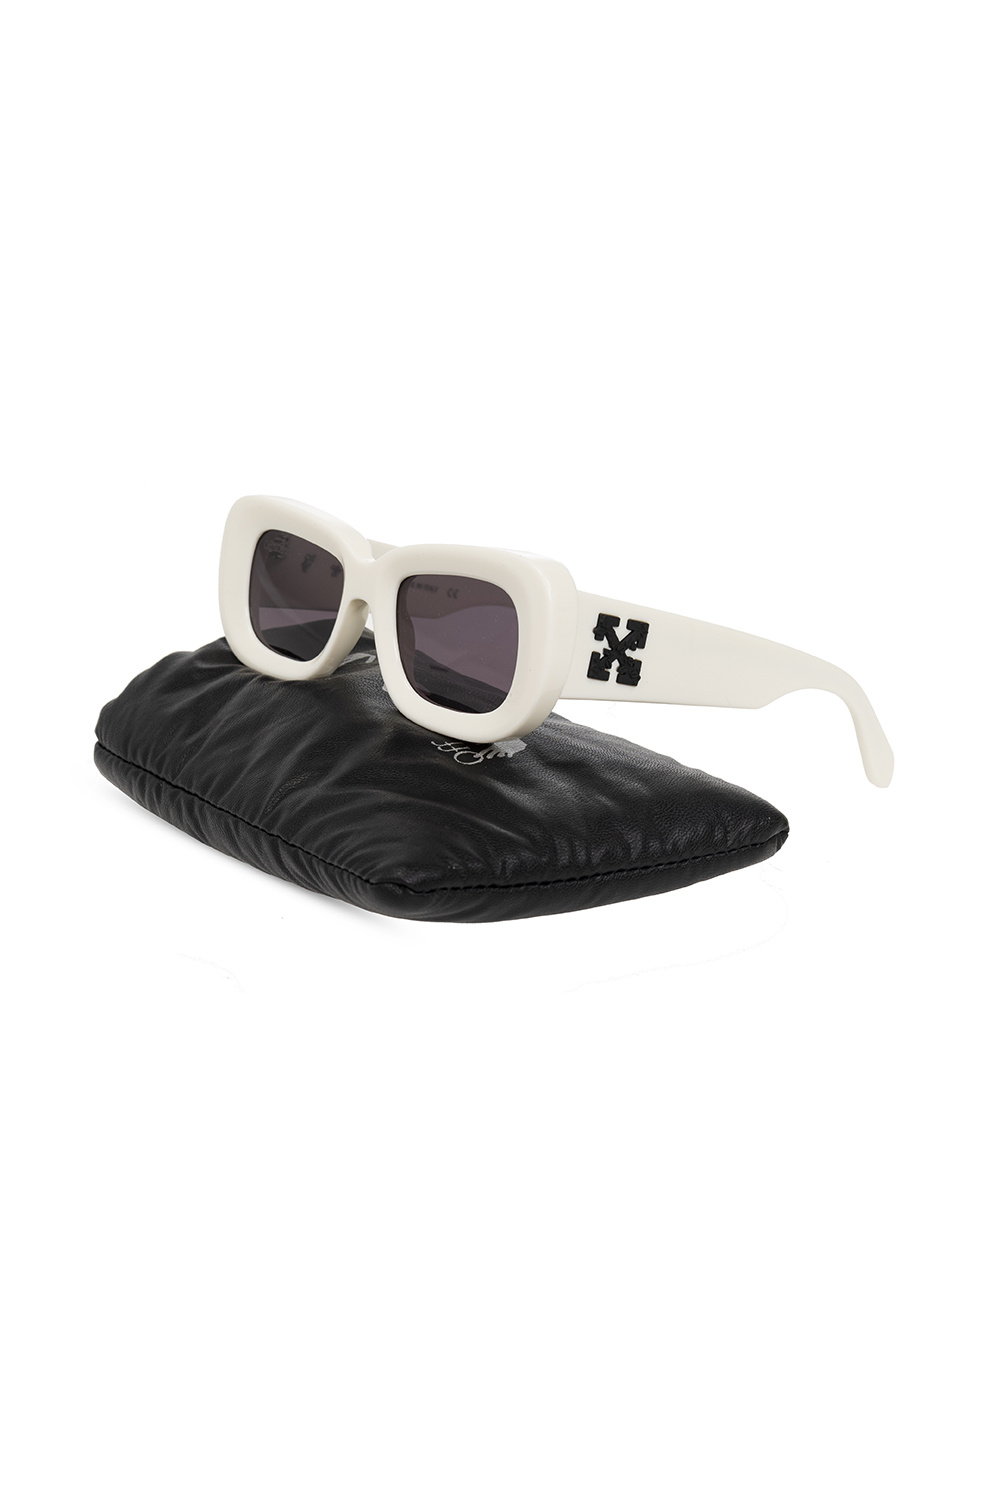 Off-White Vulcanite Sunglasses in translucent| Designer Sunglasses